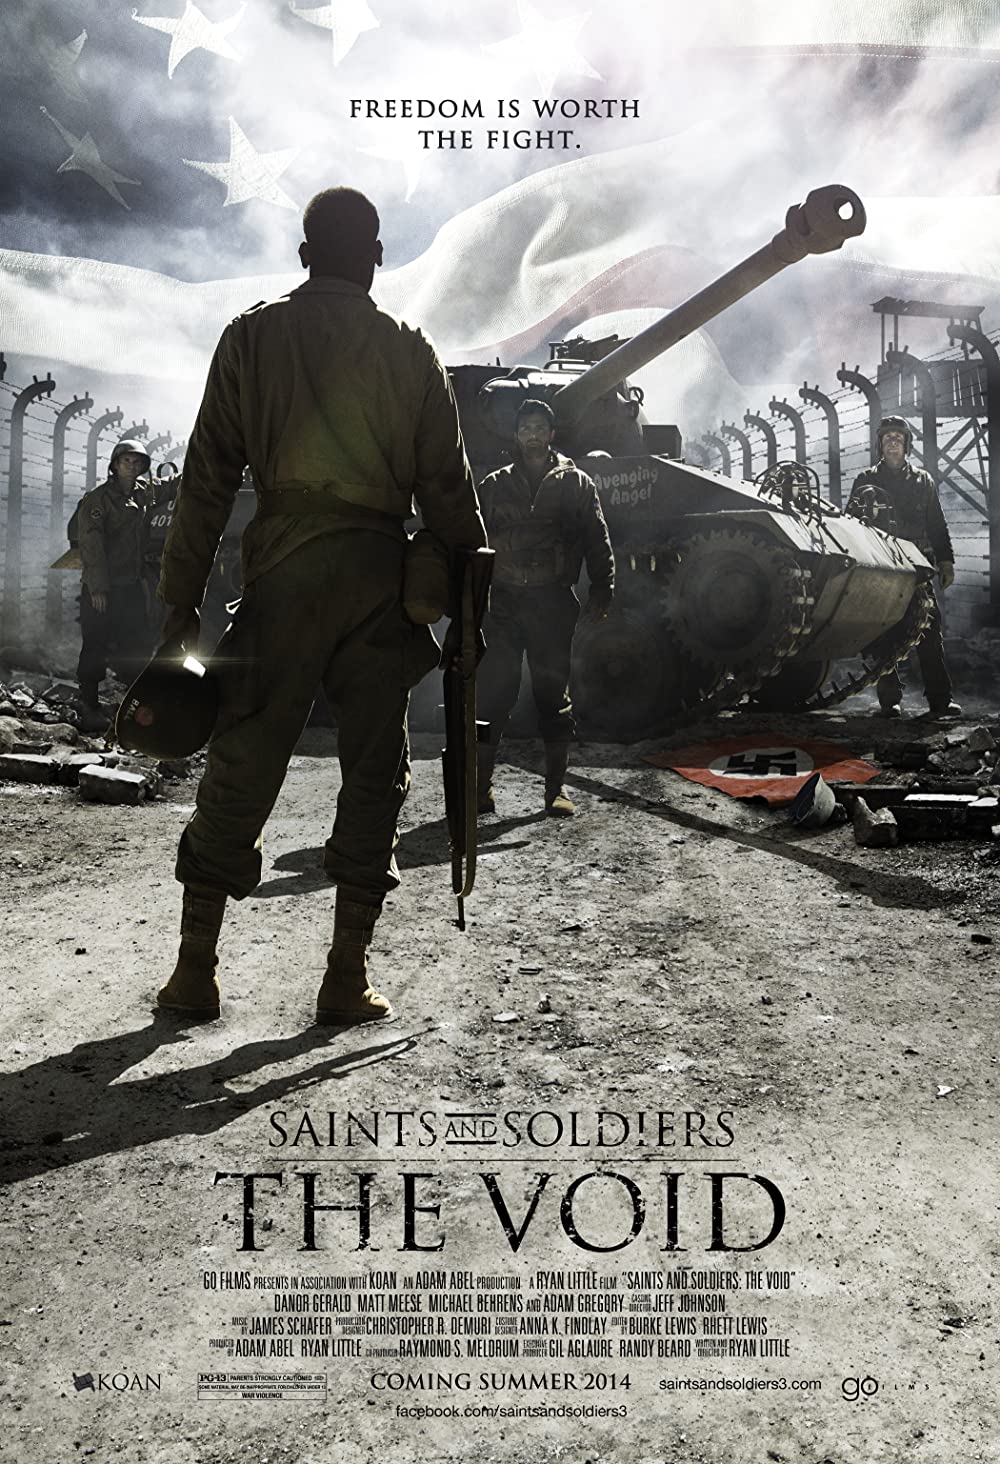 ดูหนังออนไลน์ฟรี Saints and Soldiers The Void (2014) เซนท์ แอนด์ โซลเจอร์ส เดอะ วอยด์ [Soundtrack]